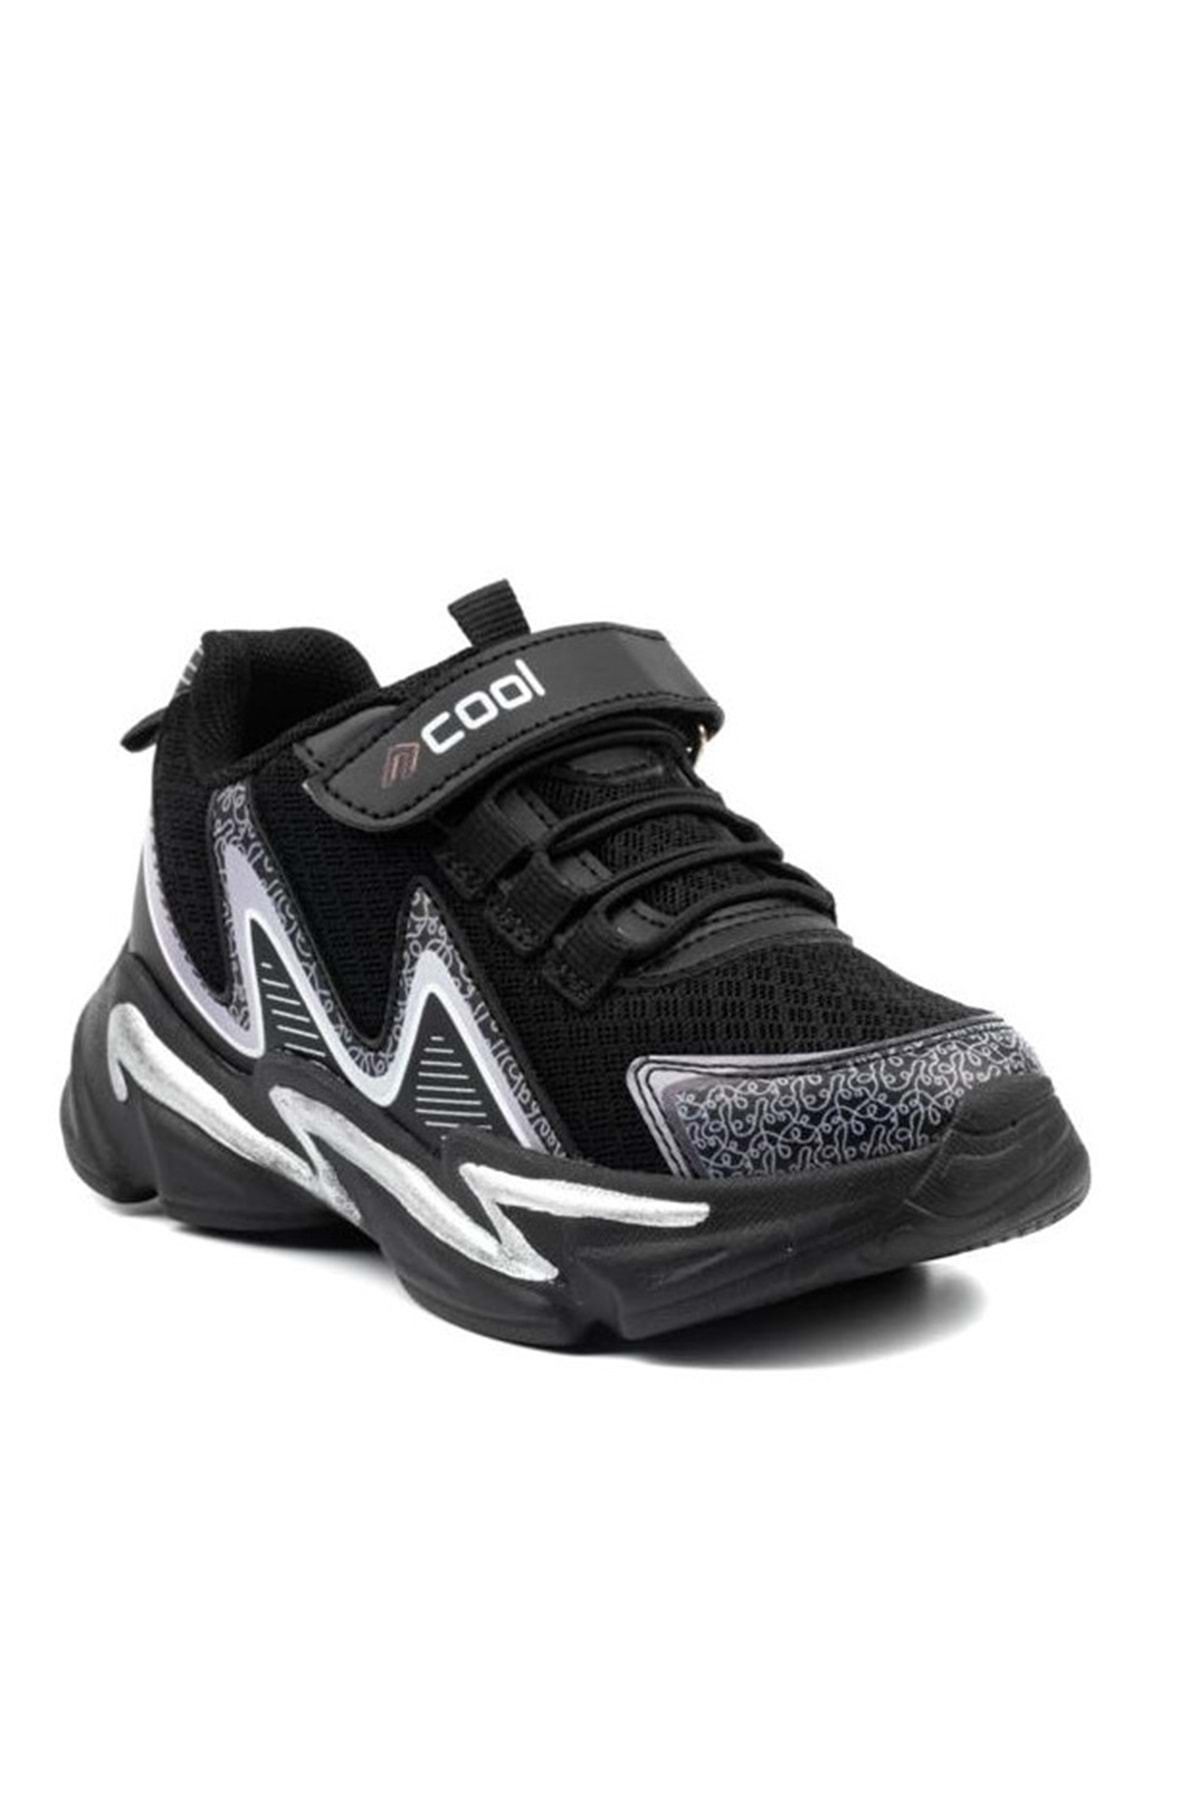 KOCAMANLAR Cool Loft Sneaker Ortapedik Çocuk Spor Ayakkabı Siyah